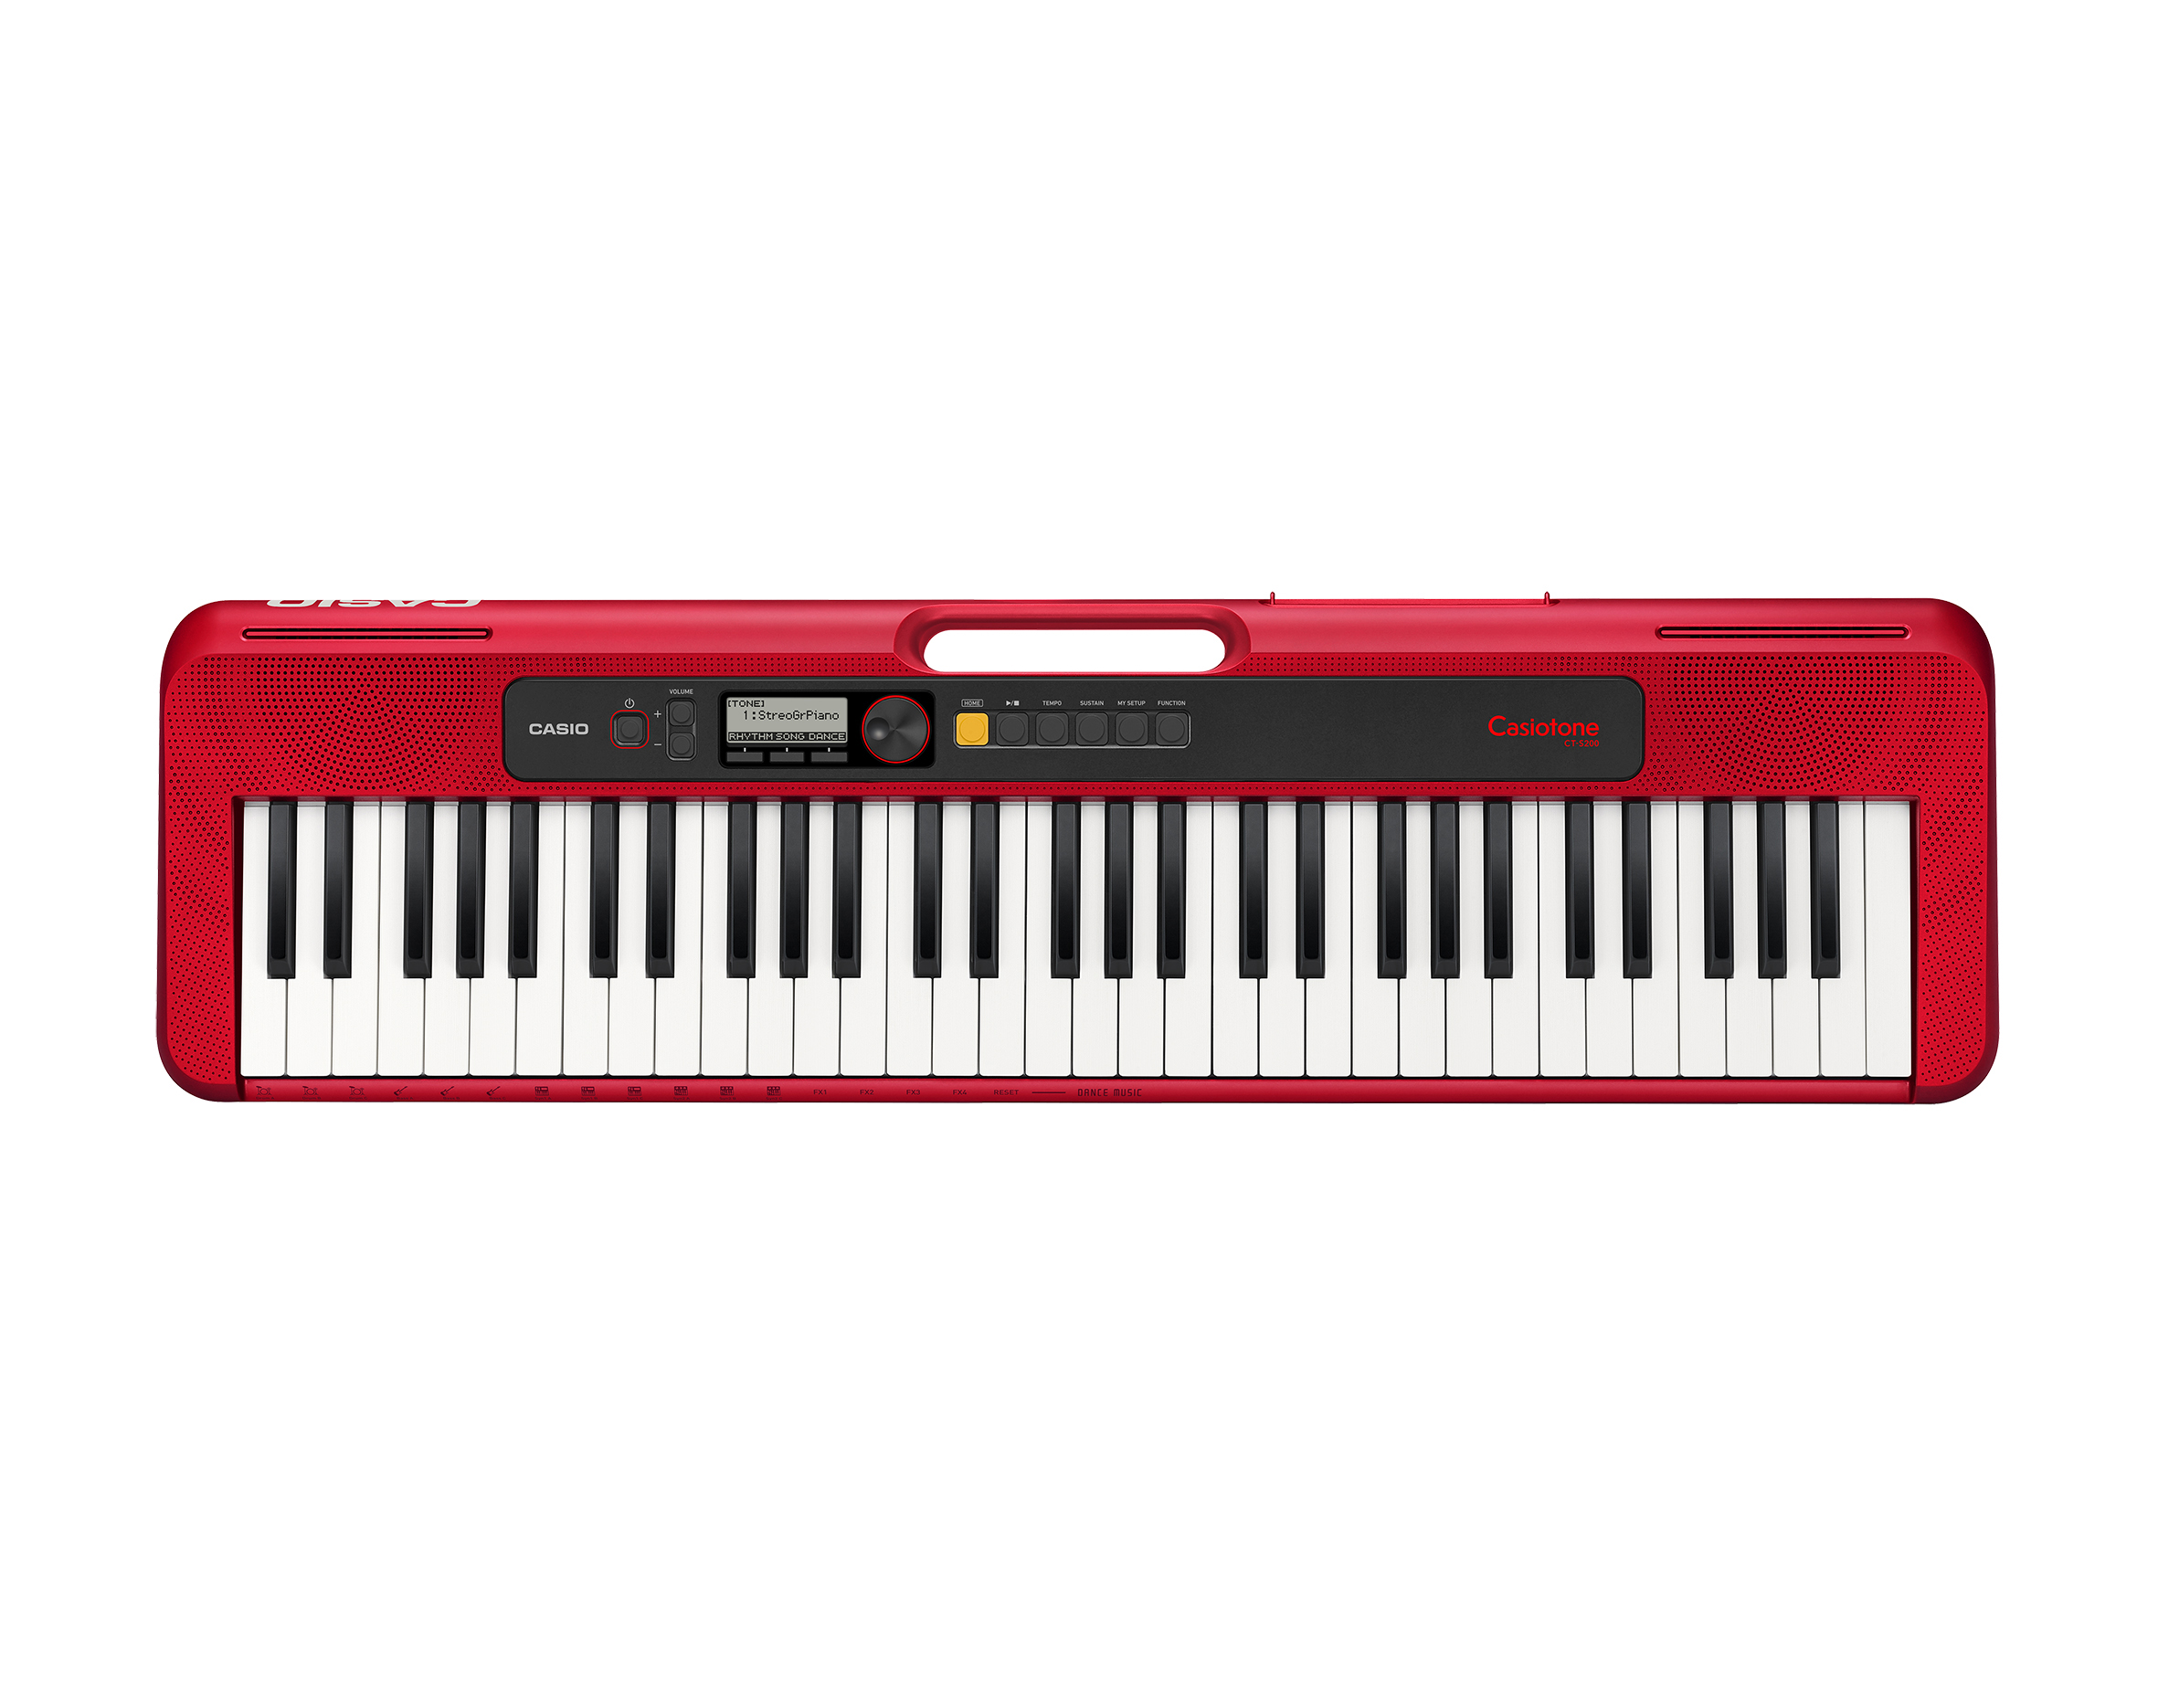 Køb Casio CT-S200 Keyboard - Rød - Pris 1195.00 kr.